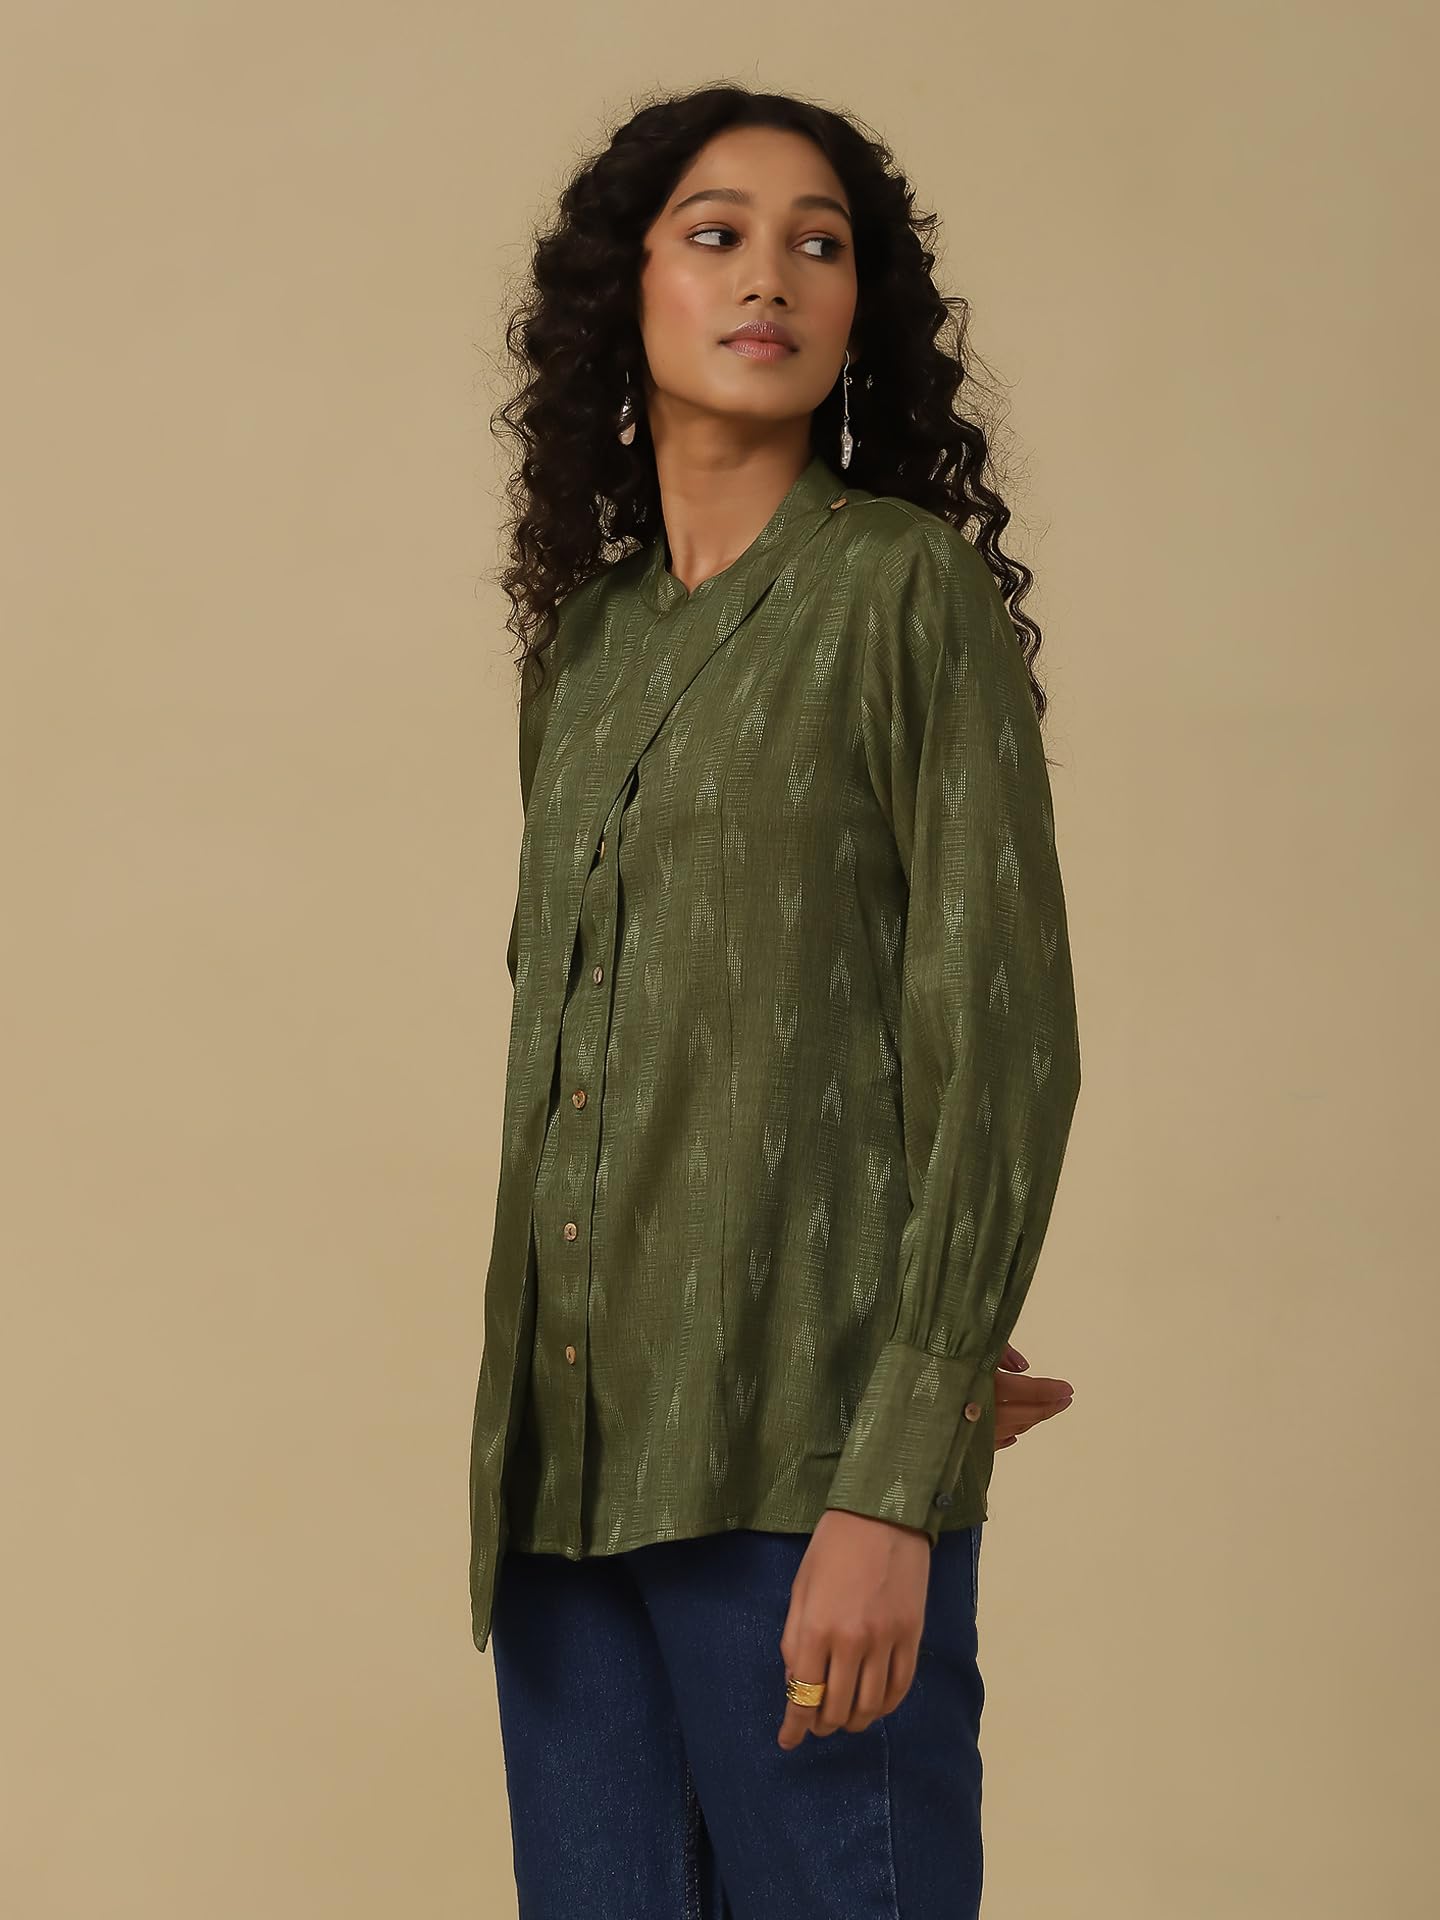 Aarke Ritu Kumar Green Yarn Dyed Shirt 